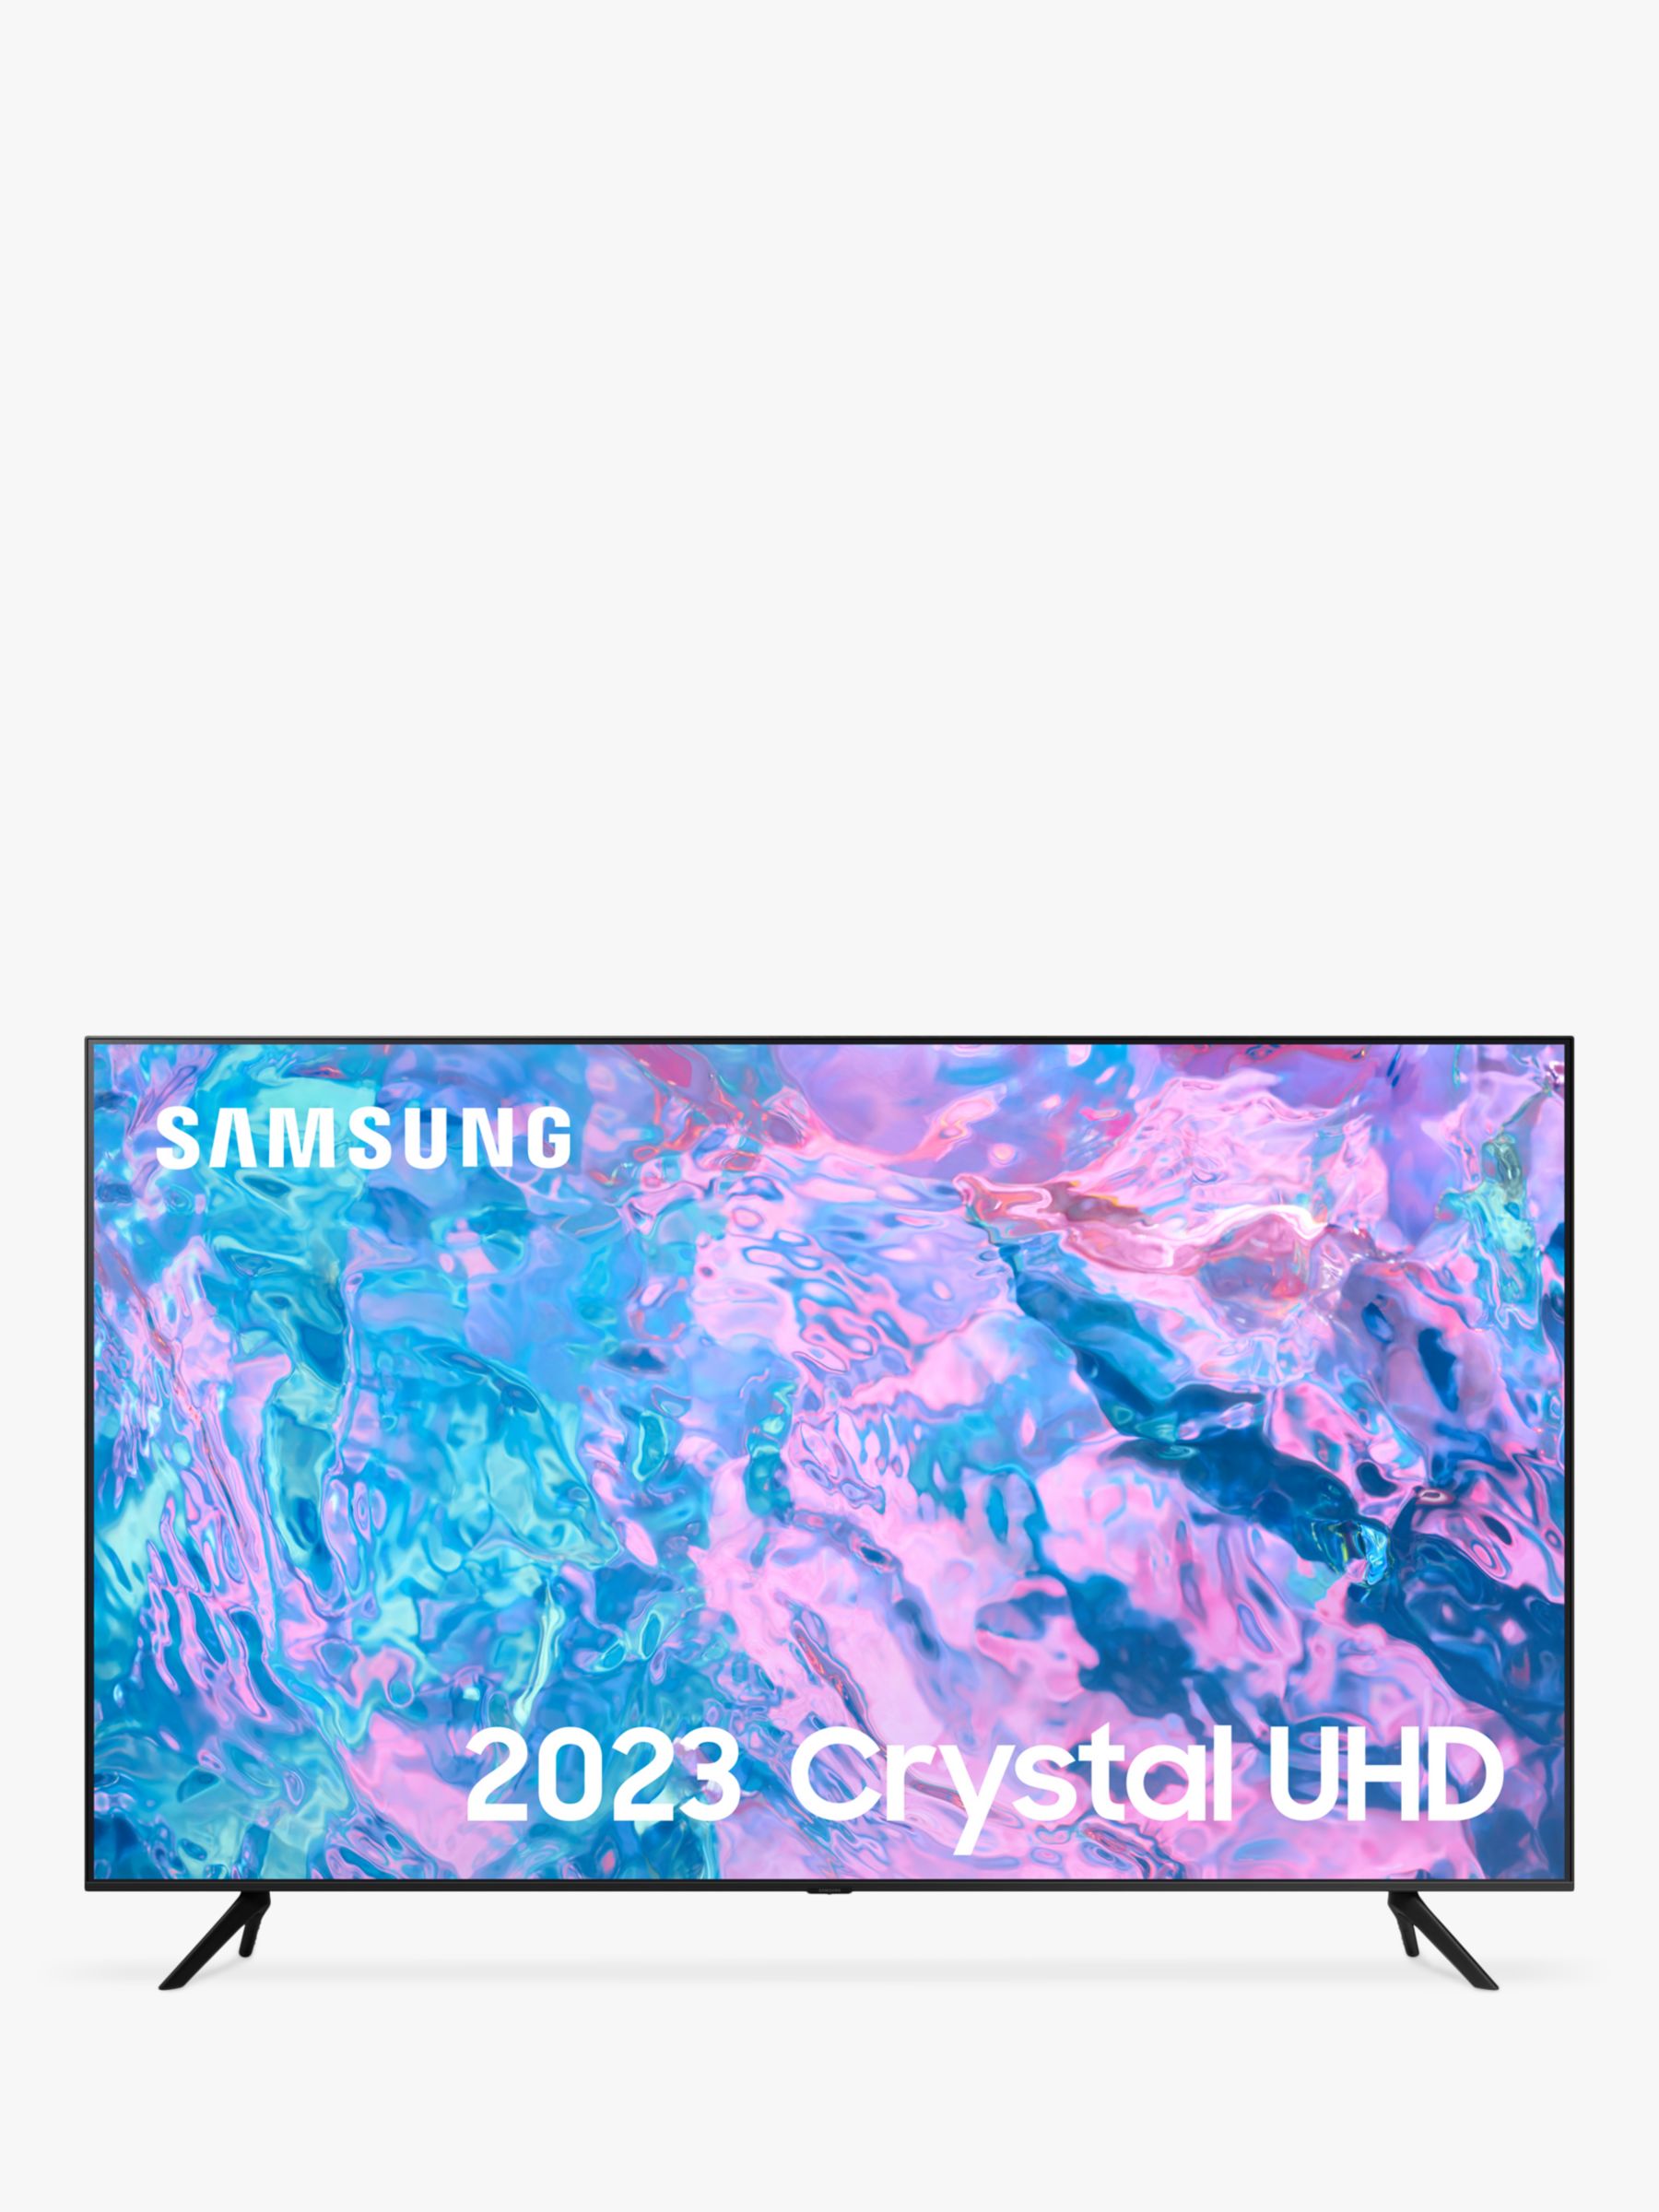 Samsung TV LED 55, UHD, 4K, SMART, Q-Symphony, 20W